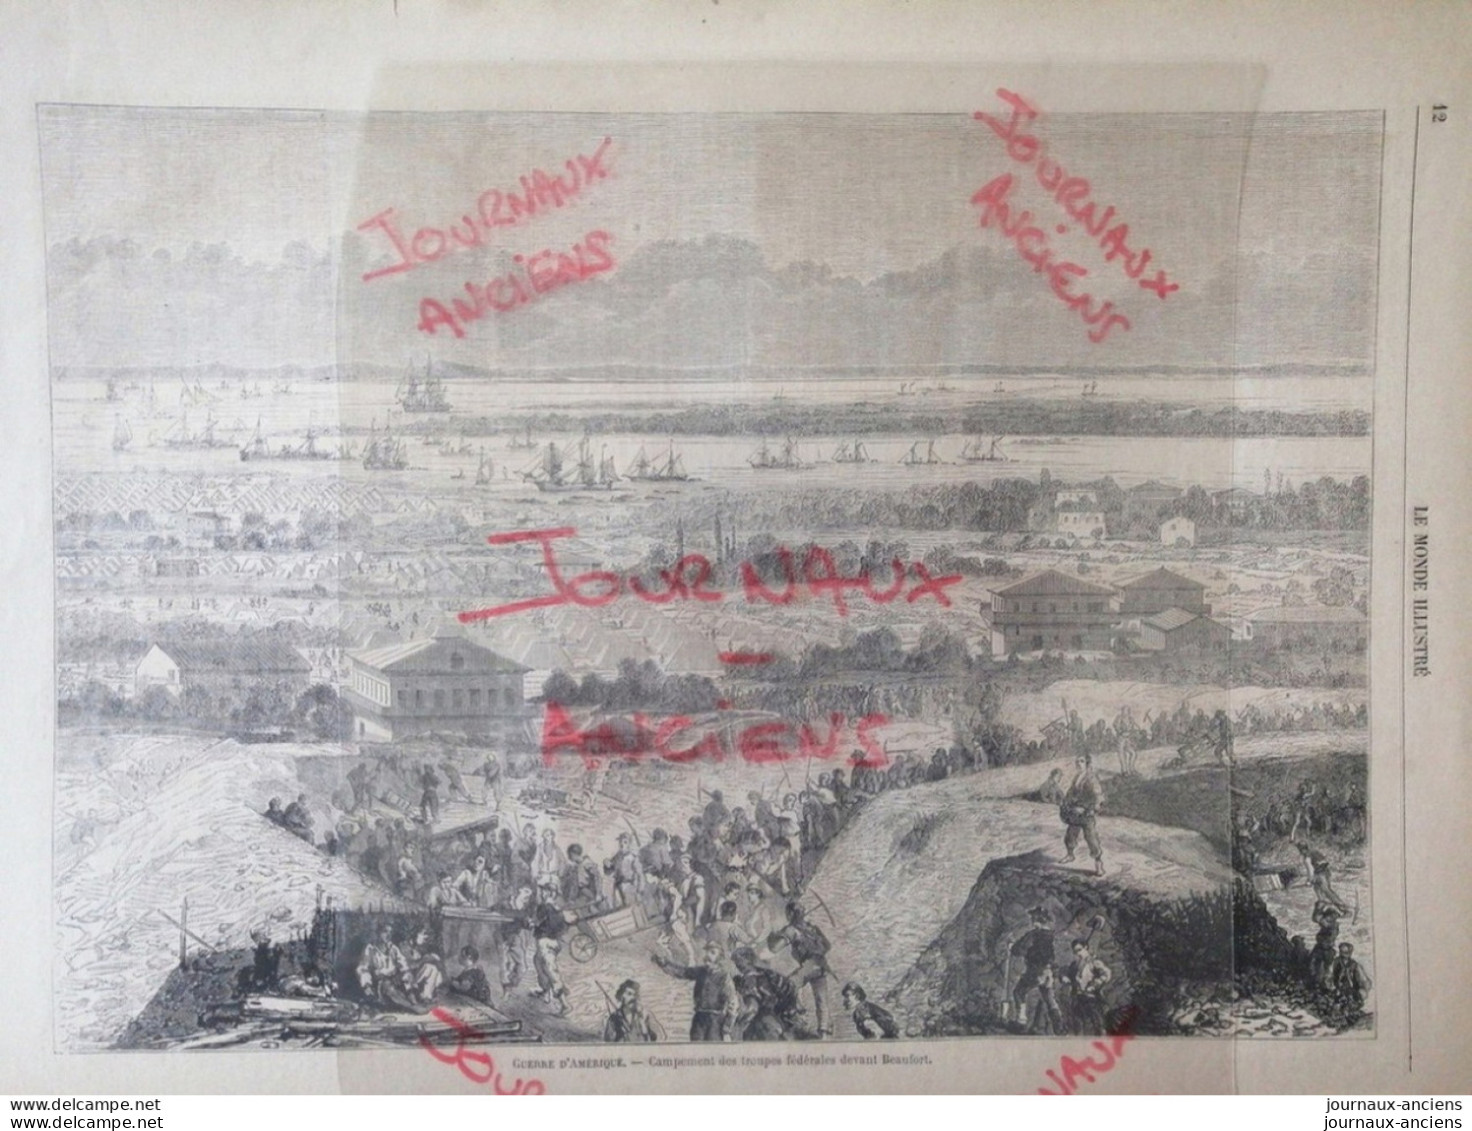 1862 GUERRE D'AMÉRIQUE - CAMPEMENT DEVANT BEAUFORT.- SAINT LAURENT AU CANADA - SAINT JOSEPH MISSOURI - LE MONDE ILLUSTRÉ - 1850 - 1899